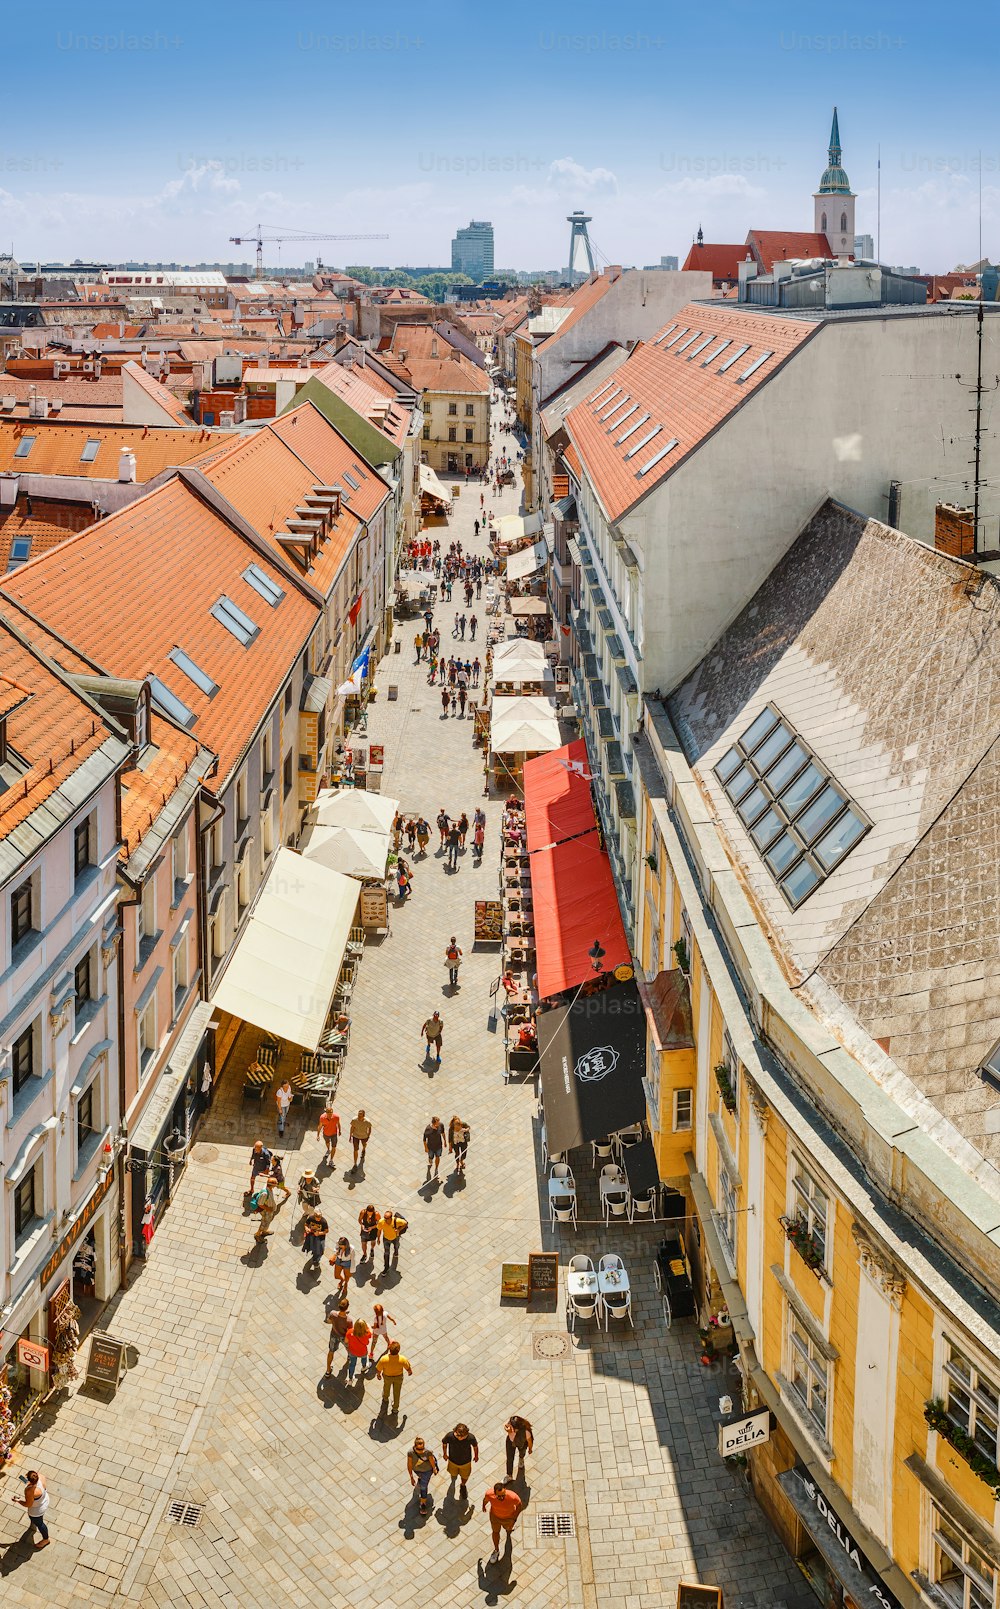 Vista panorámica de los tejados y el casco antiguo desde una altura, atracciones turísticas en el concepto de Bratislava